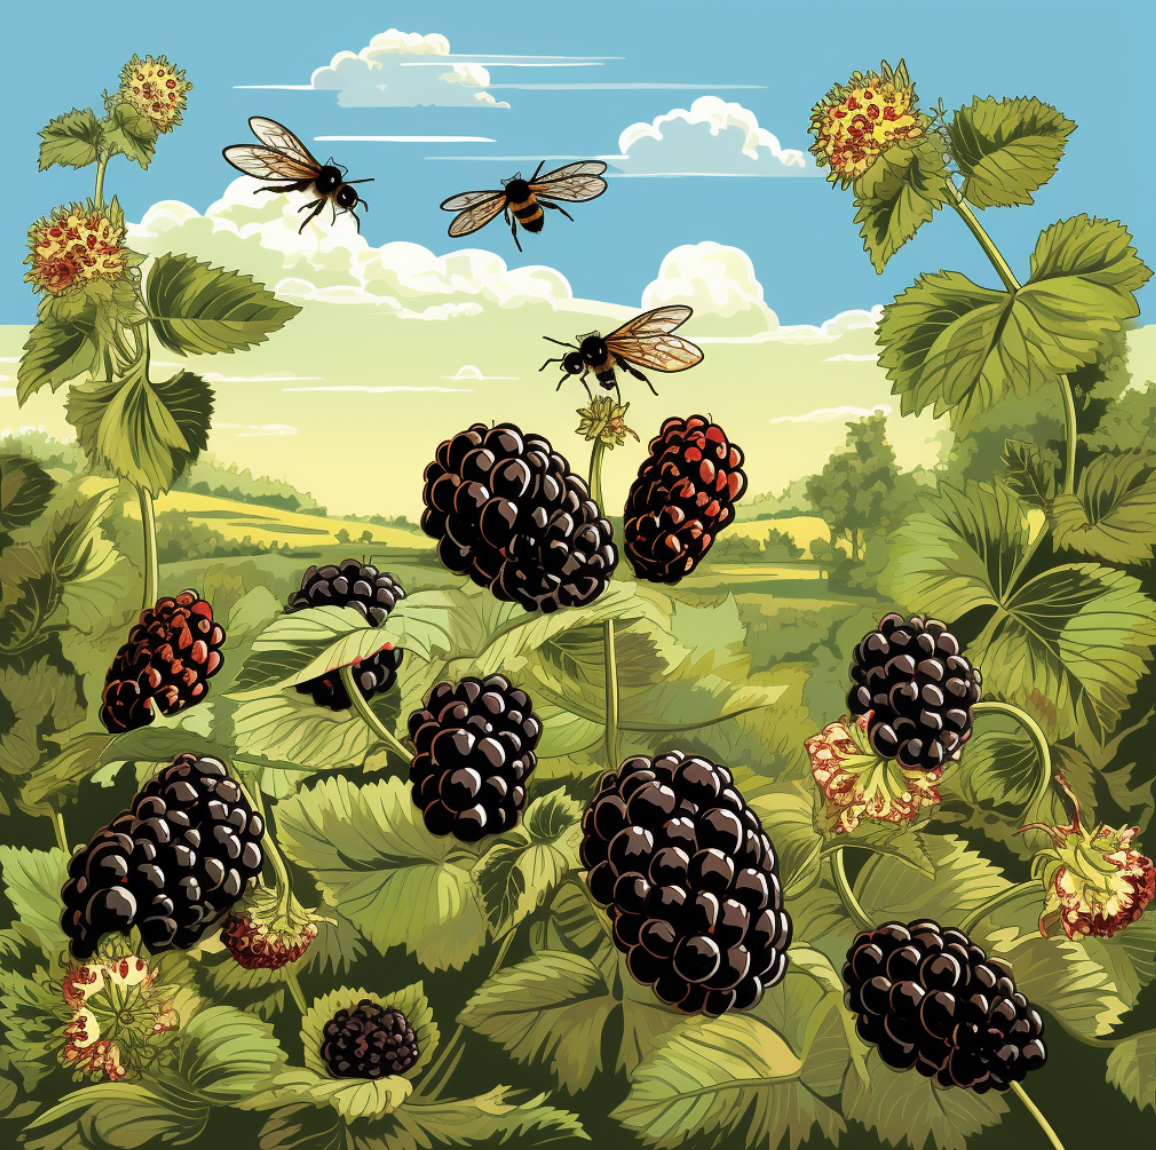 Blackberry: Raw Honey 12 oz